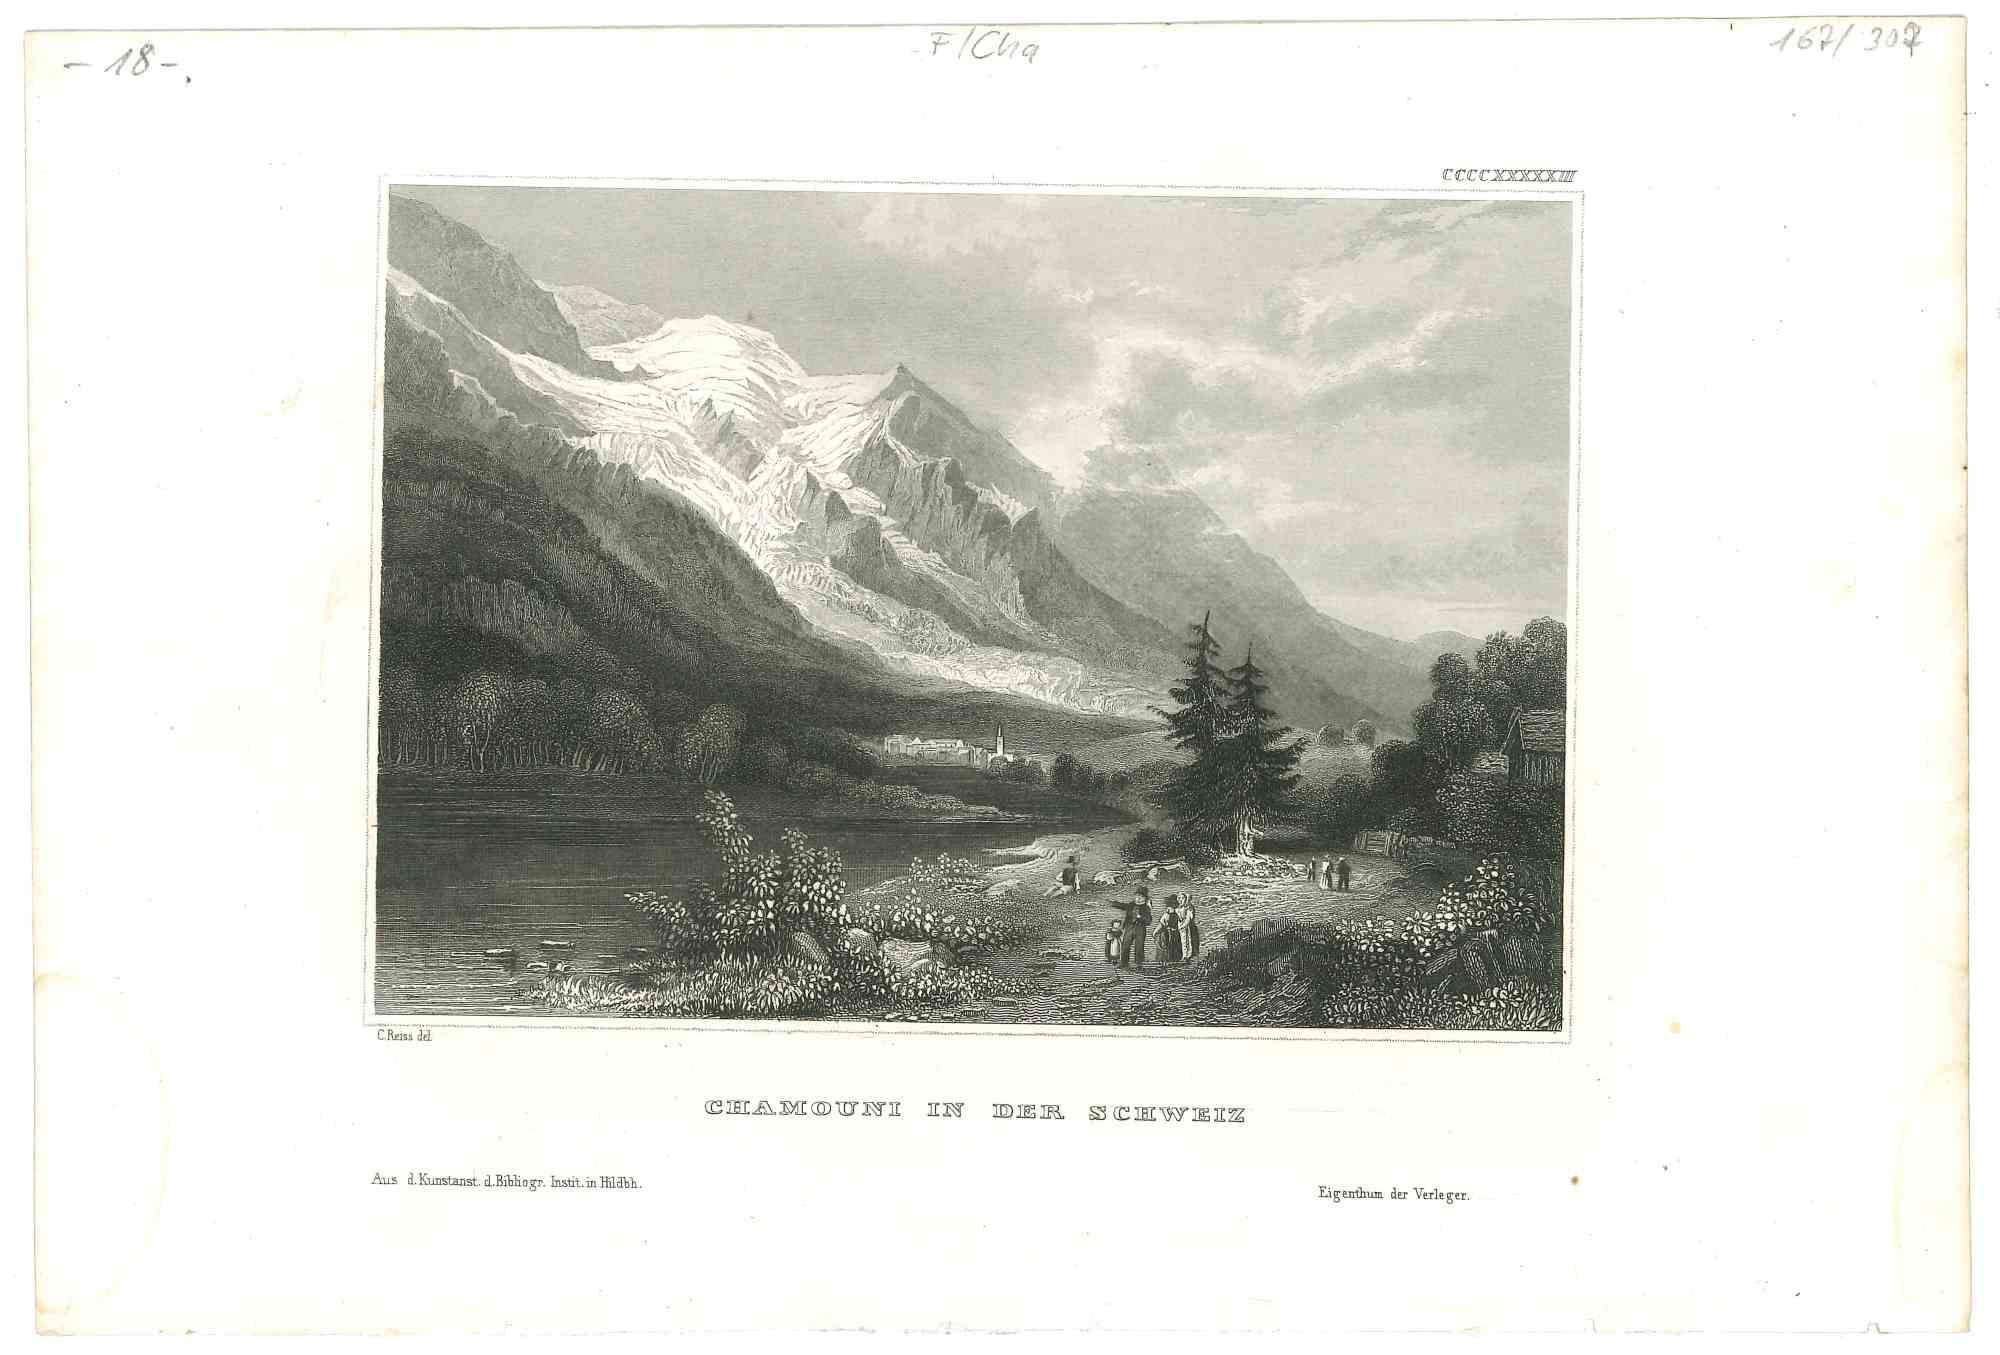 Unknown Landscape Print - Chamouni in der Schweiz - Original Lithograph - Mid-19th Century